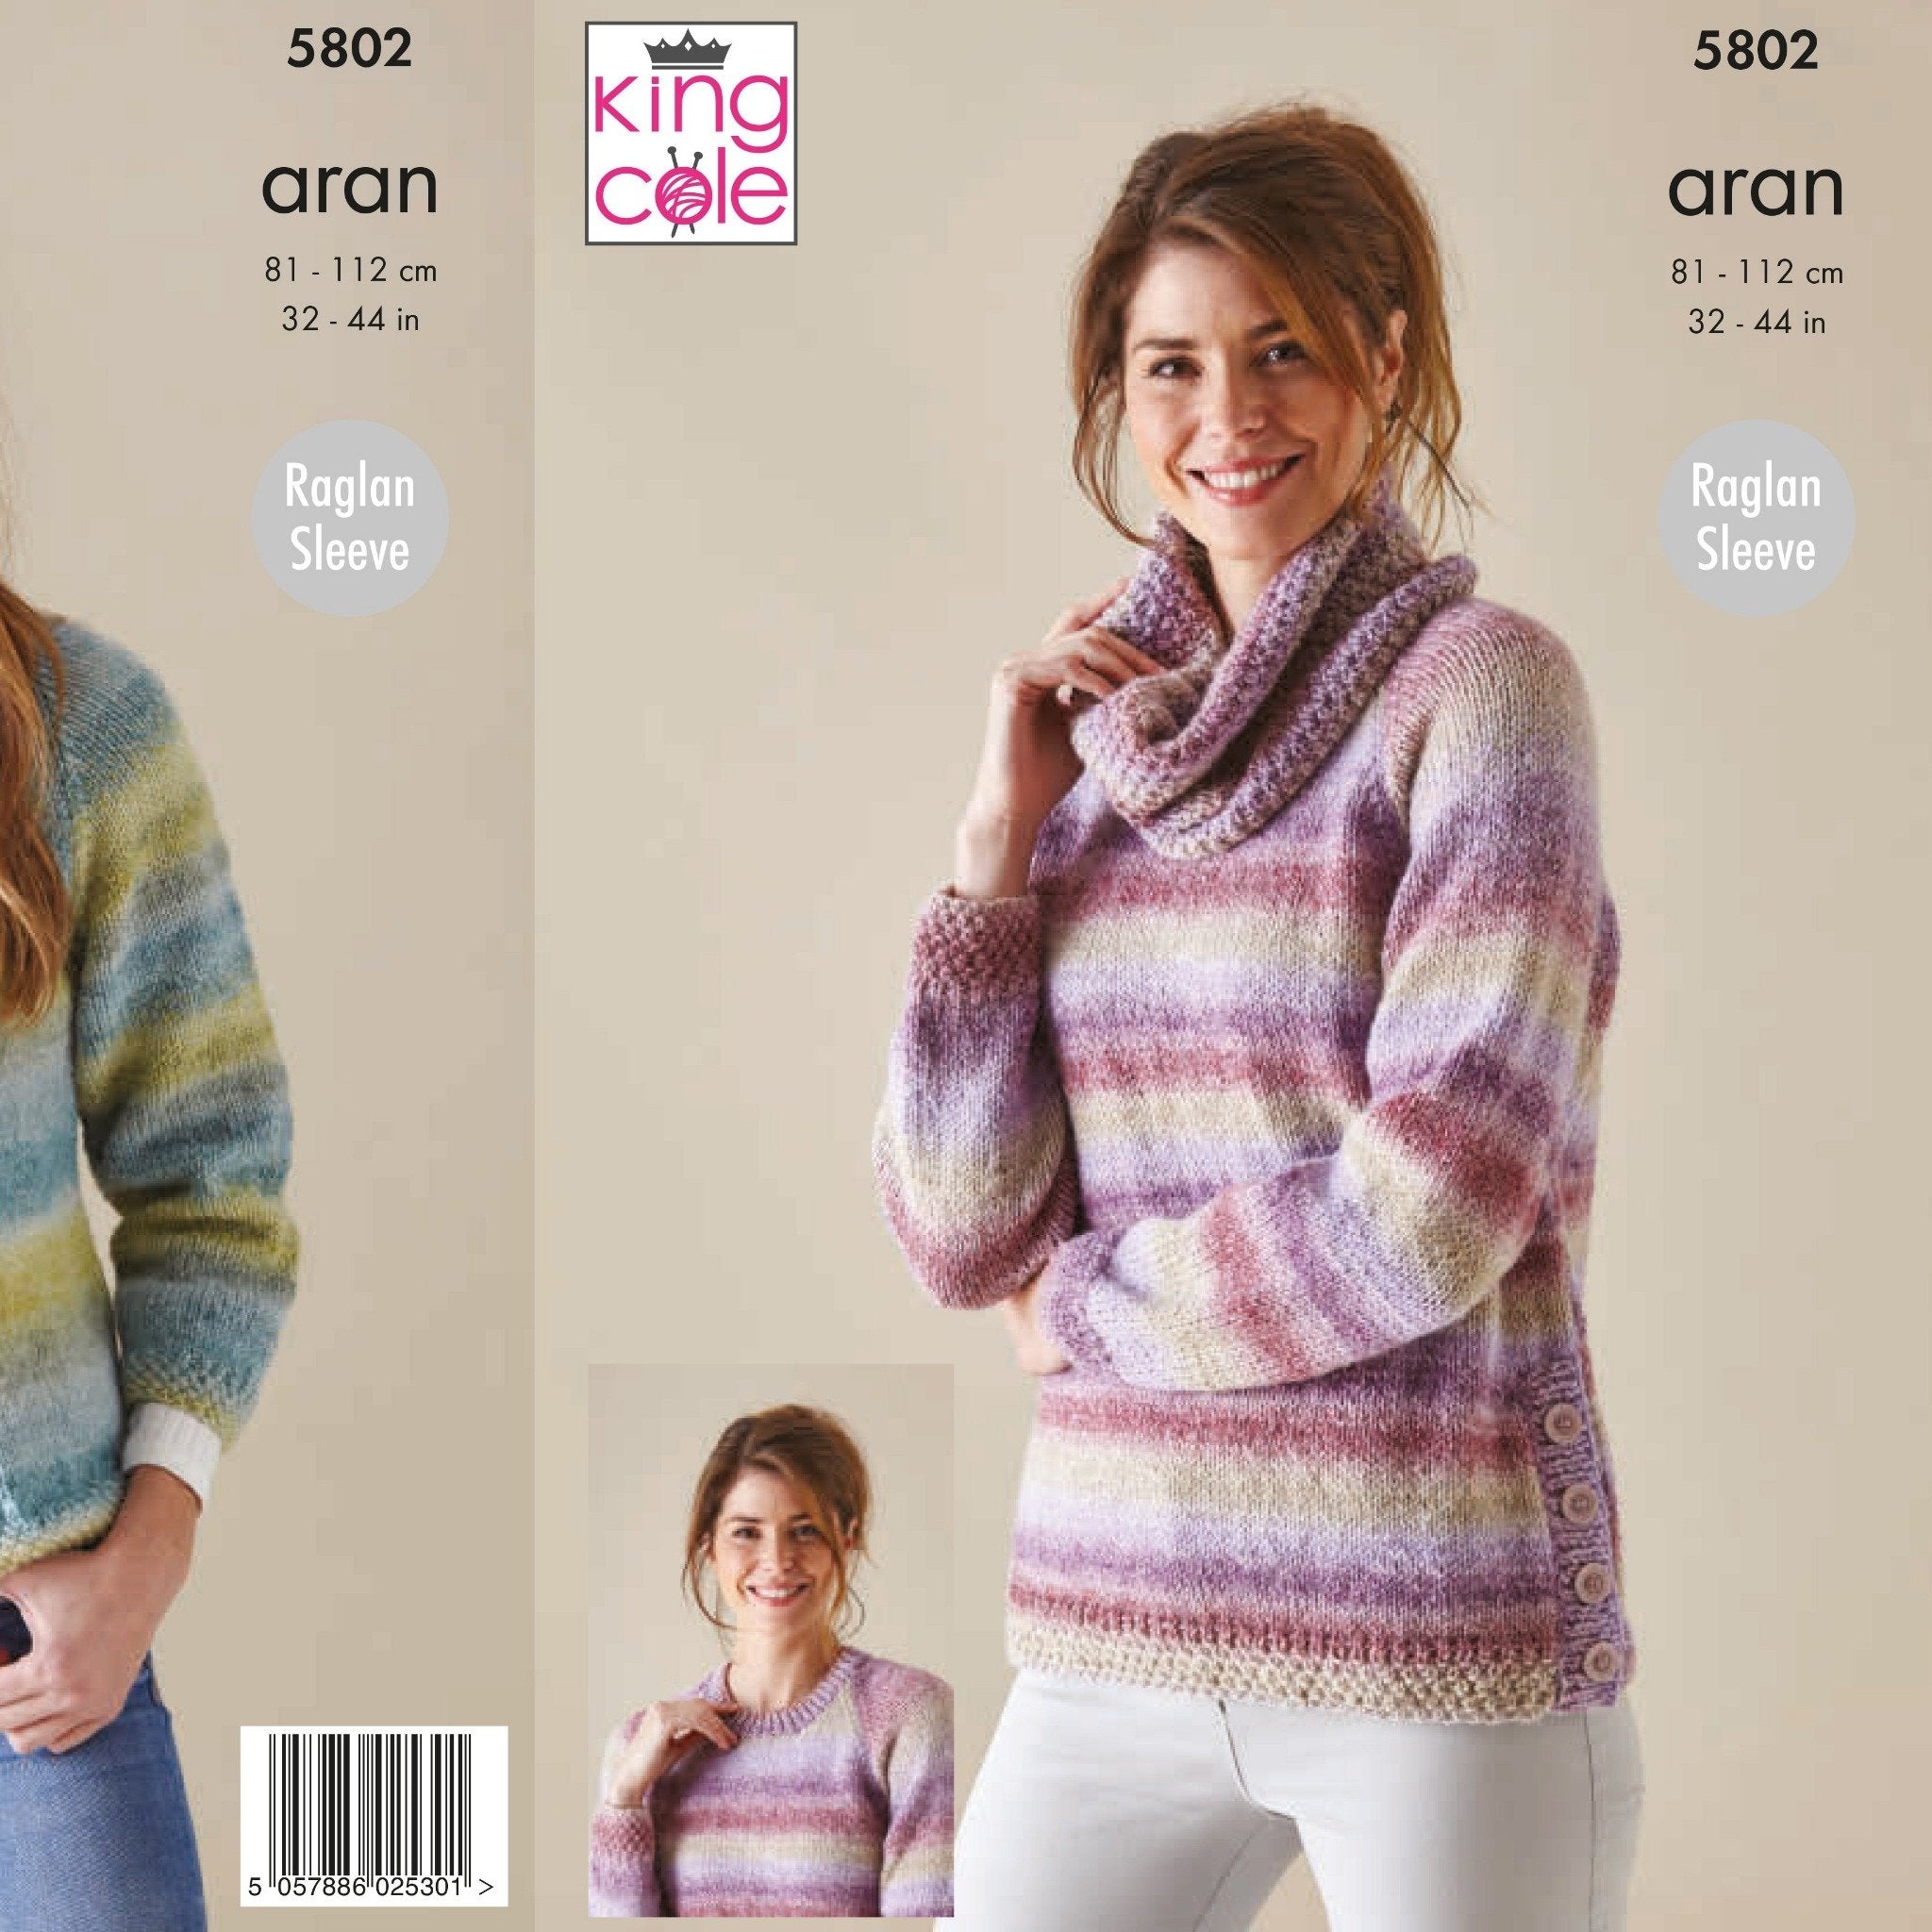 King Cole Aran Knitting Pattern - Ladies Sweater & Jacket (5298